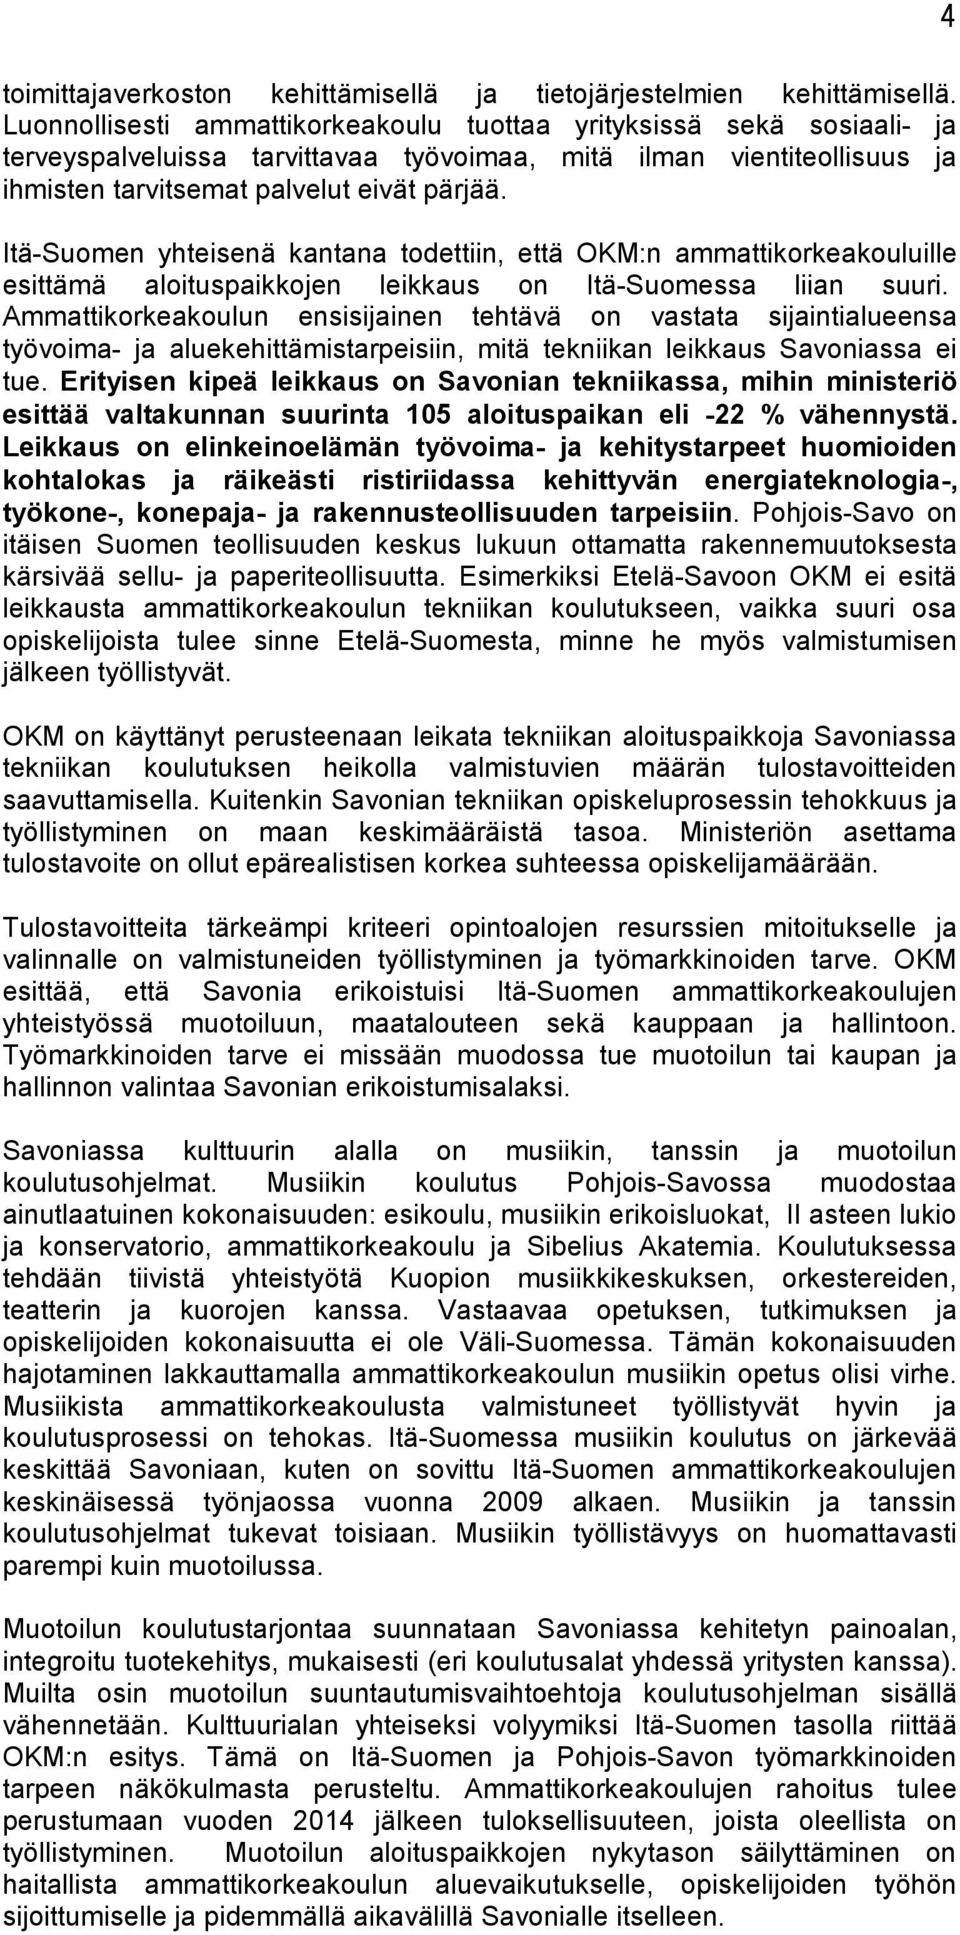 Itä-Suomen yhteisenä kantana todettiin, että OKM:n ammattikorkeakouluille esittämä aloituspaikkojen leikkaus on Itä-Suomessa liian suuri.